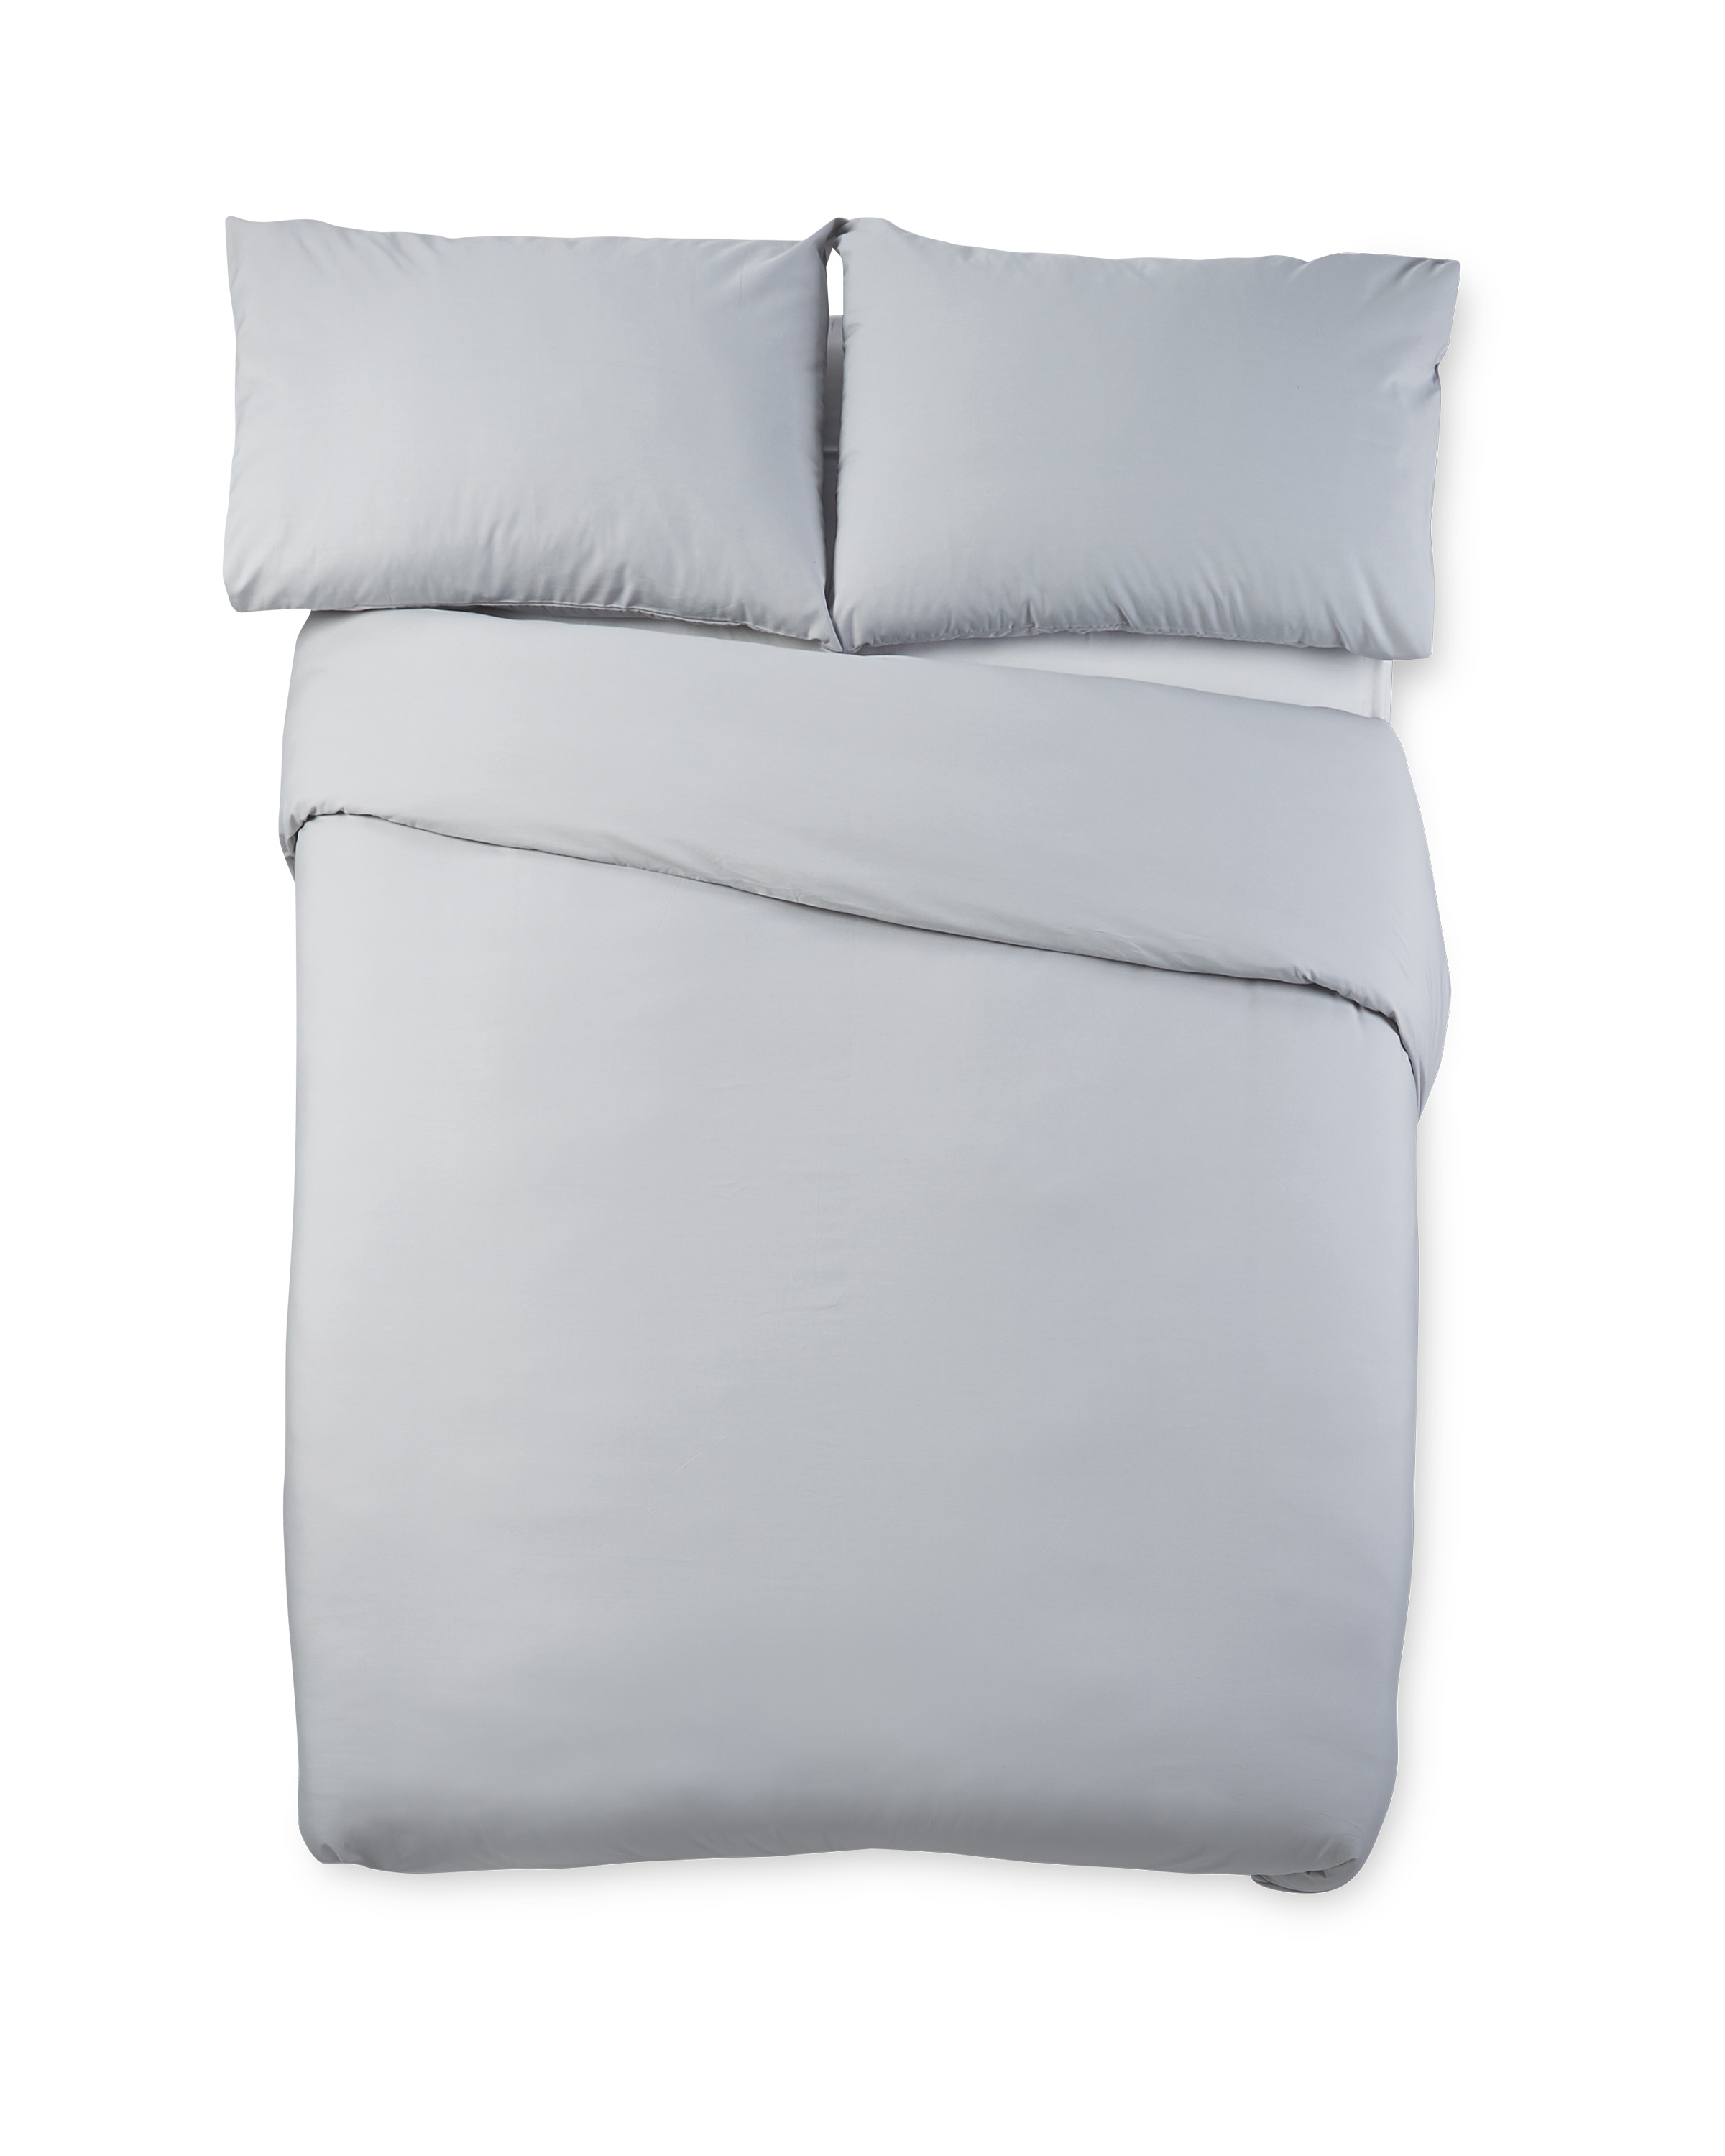 Grey Cooling Super King Duvet Set Aldi Uk, Super King Size Bed Sheets Uk